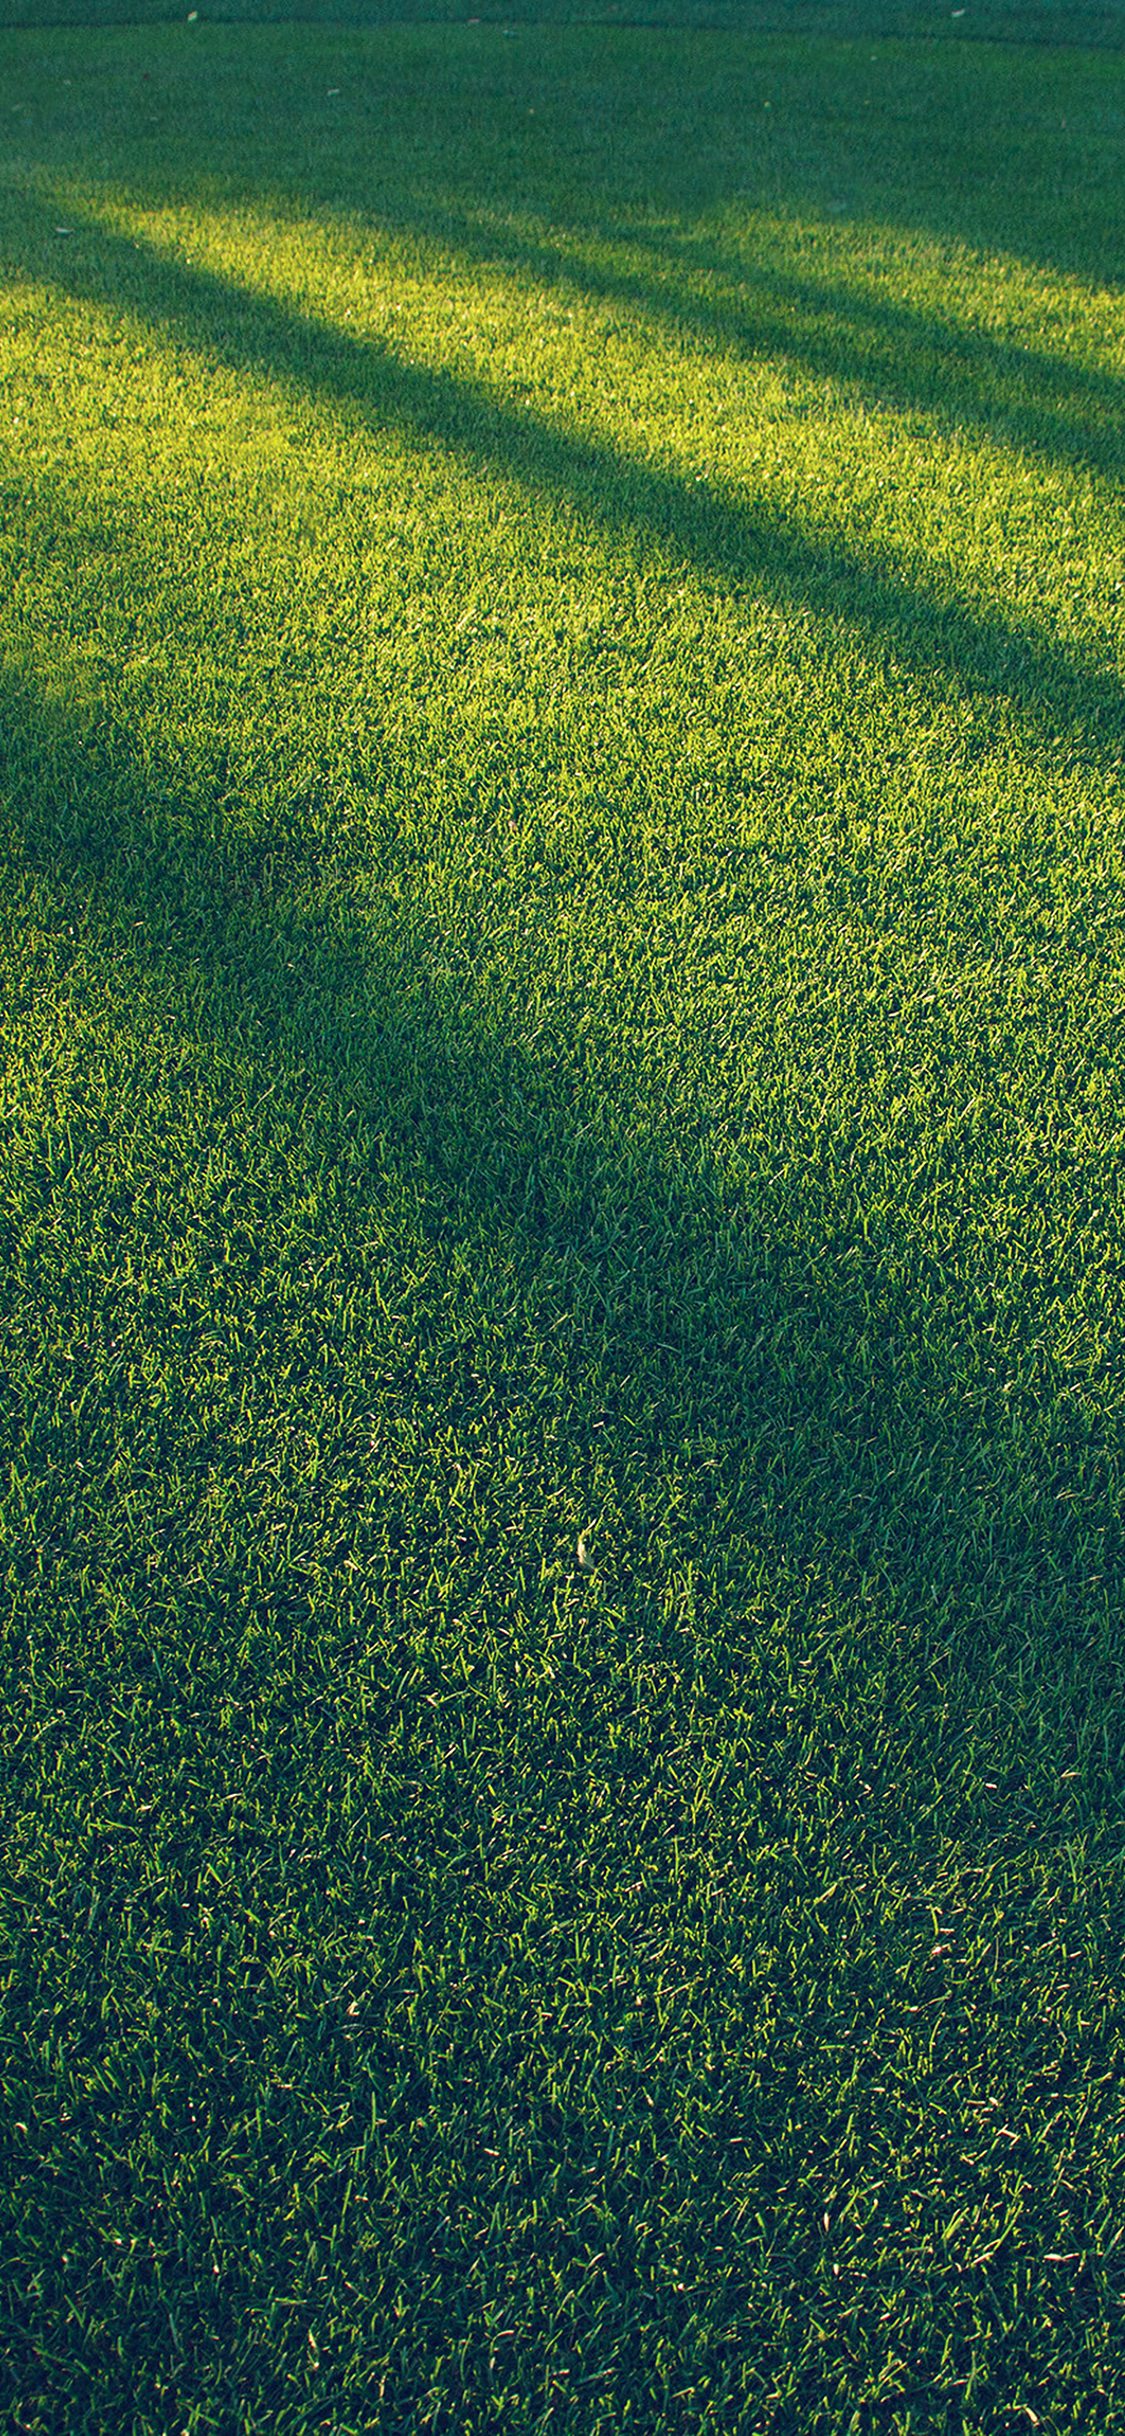 Vj86 Lawn Grass Sunlight Green Blue Pattern - Iphone Grass , HD Wallpaper & Backgrounds